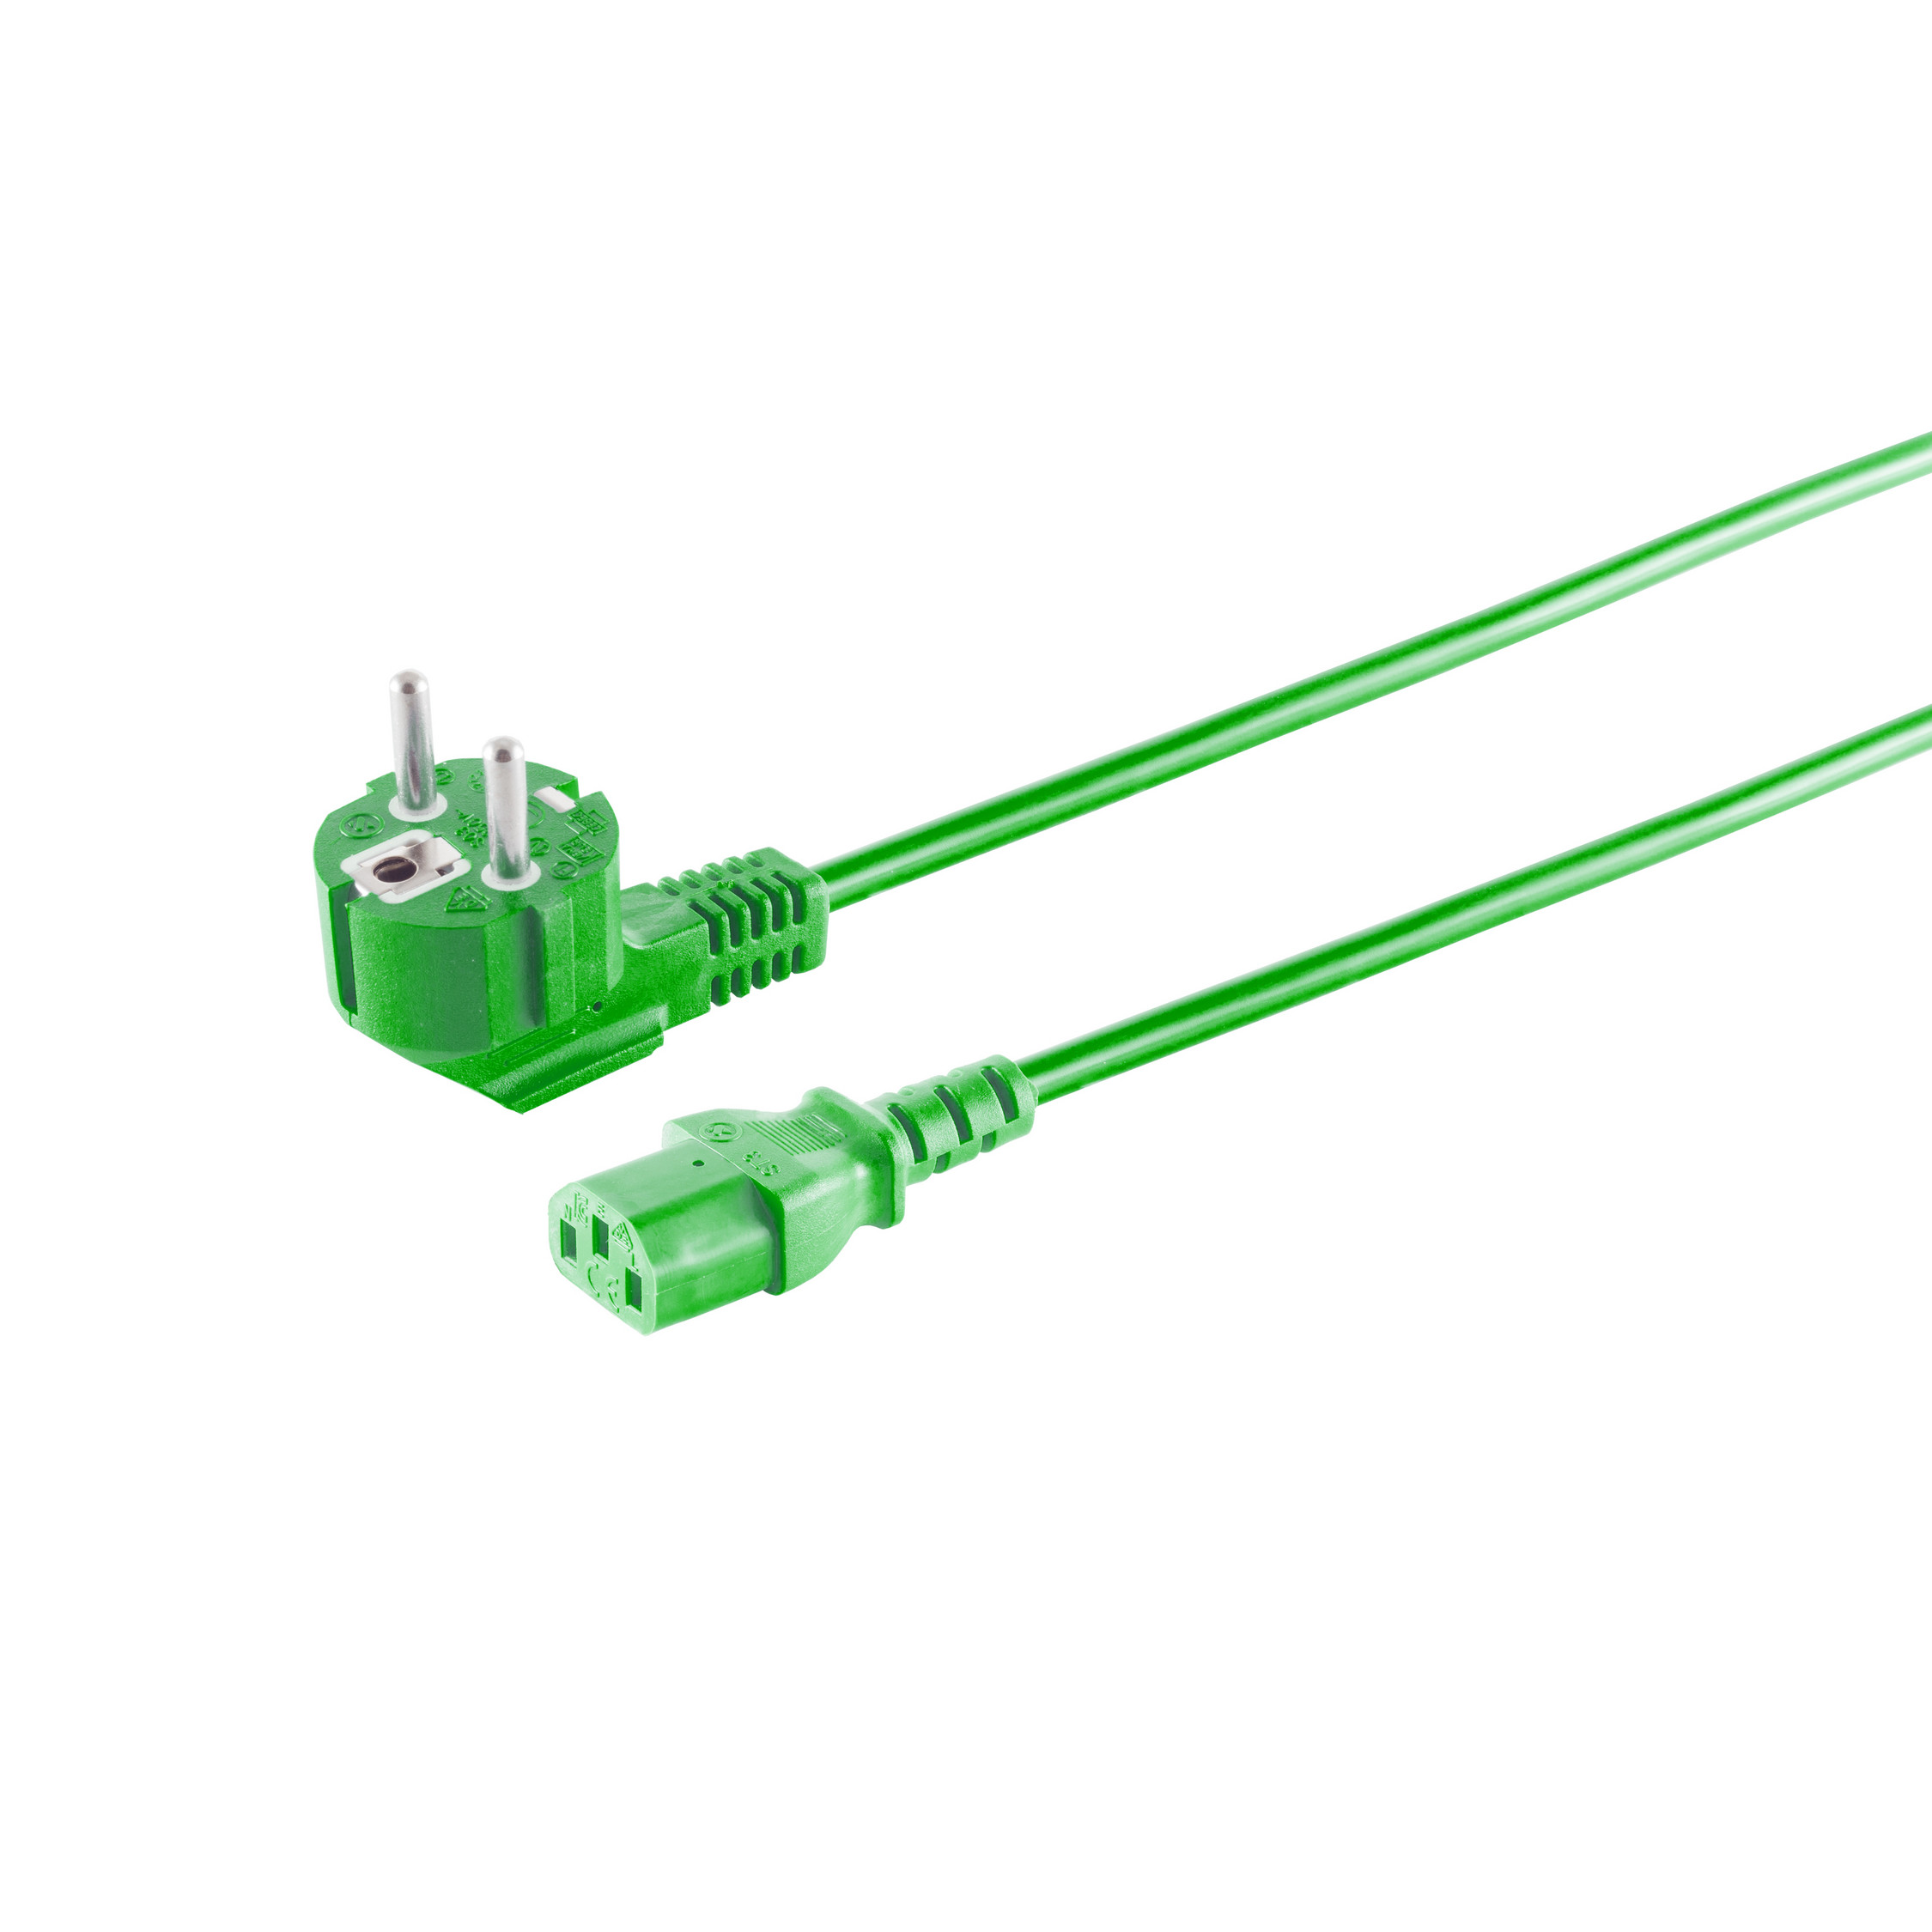 S/CONN MAXIMUM CONNECTIVITY Schutzkontakt 3m Netzanschlusskabel grün 90°/Kaltgerätebuchse